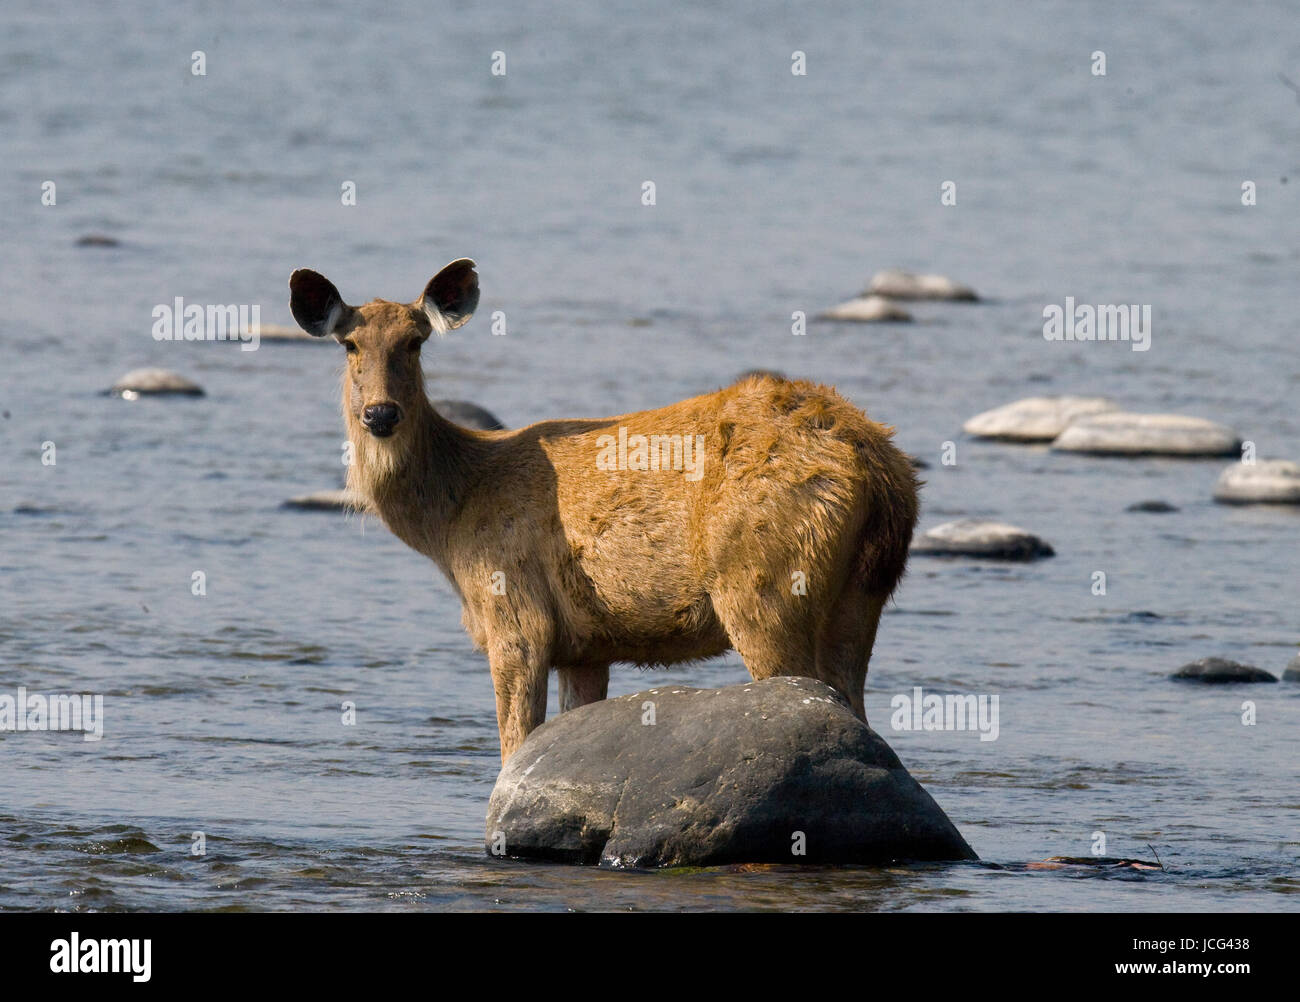 Hirsch steht im Wasser des Flusses in freier Wildbahn. Indien. Nationalpark. Stockfoto